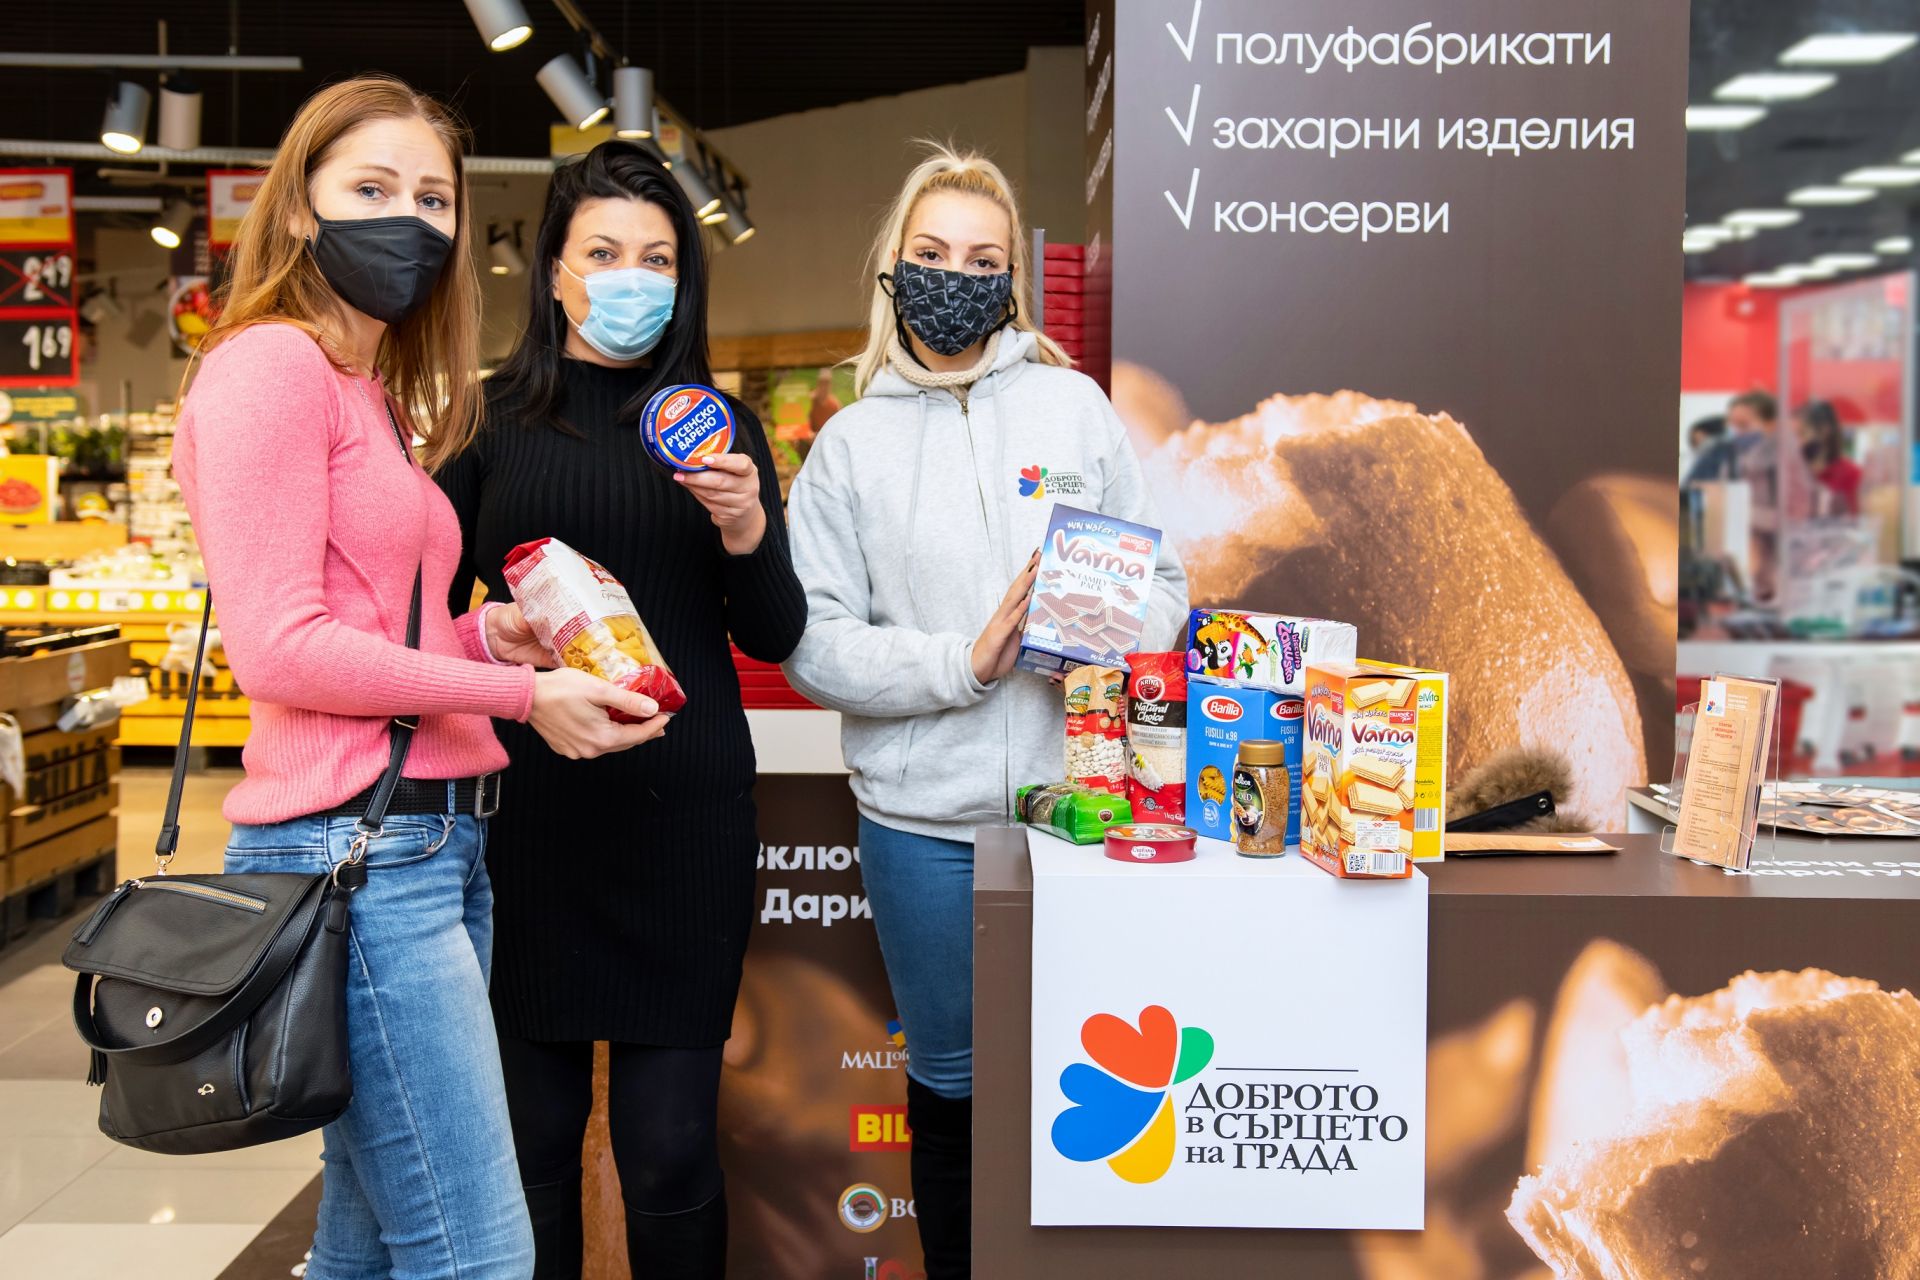 В периода до 20 декември 2020 всеки може да закупи пакетирани хранителни продукти по списък, публикуван на сайта на Mall of Sofia